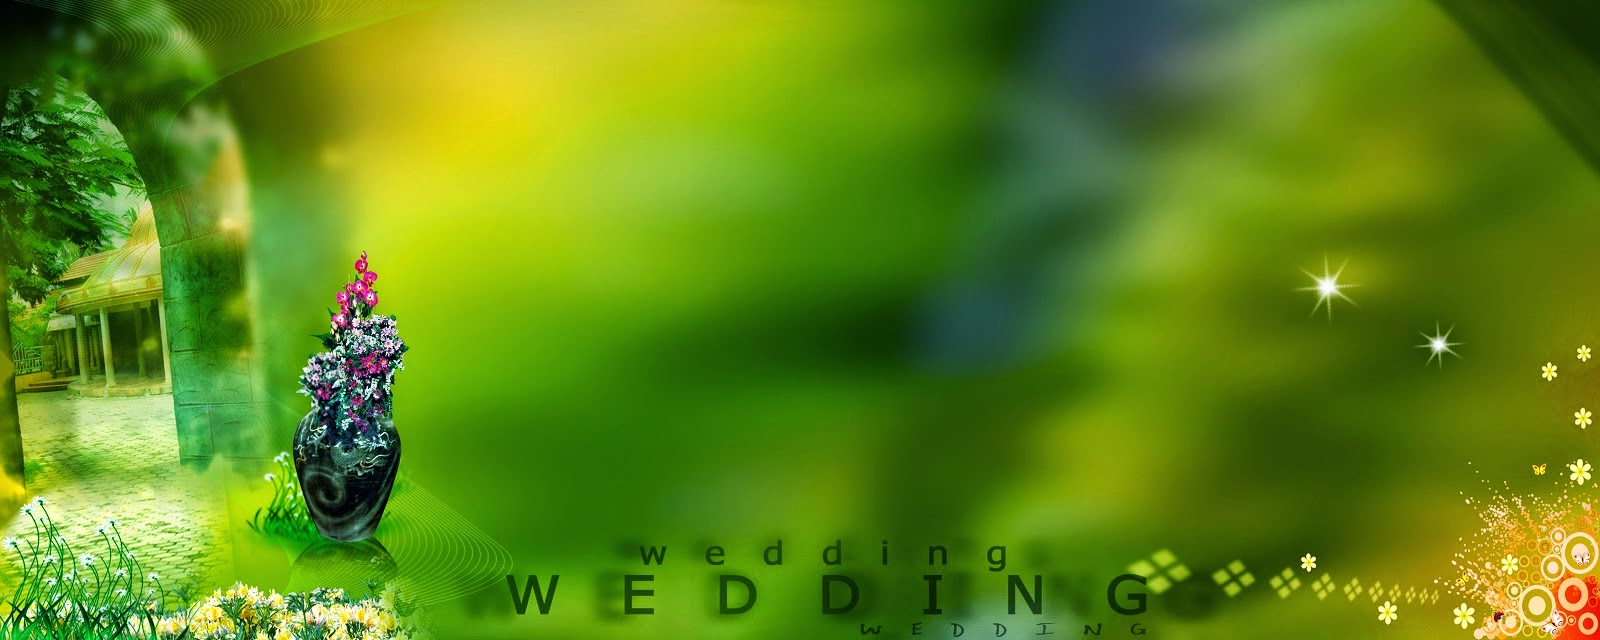 karizma album psd psd file free psdwedding psd files 202012x36 album  design psdpsd file download12x1  Album design Photo album design  Wedding album design